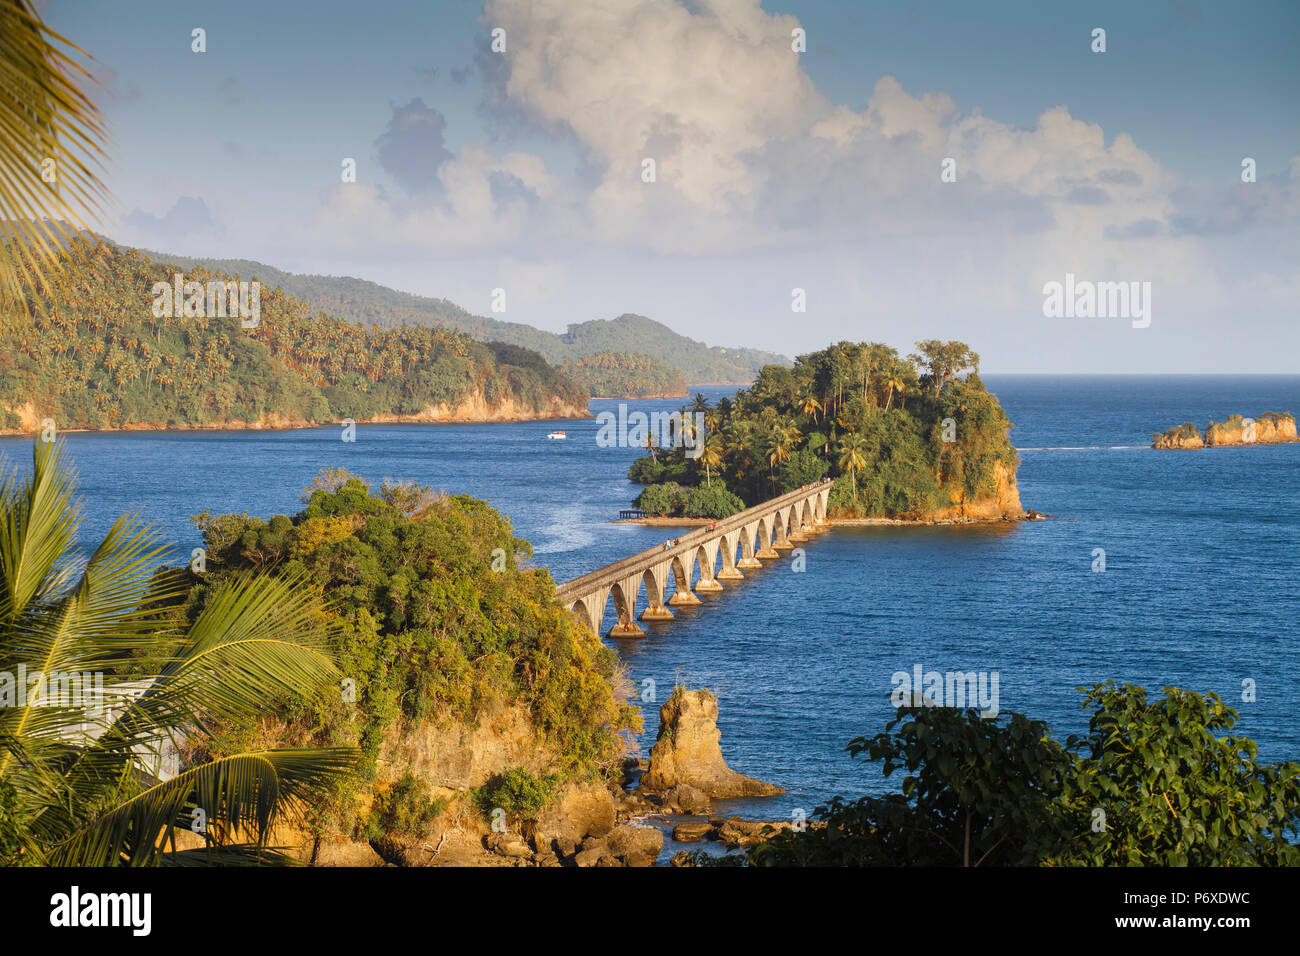 República Dominicana, en la región oriental de la península de Samaná, Semana, vista del puerto y los puentes - el famoso puente a ninguna parte Foto de stock